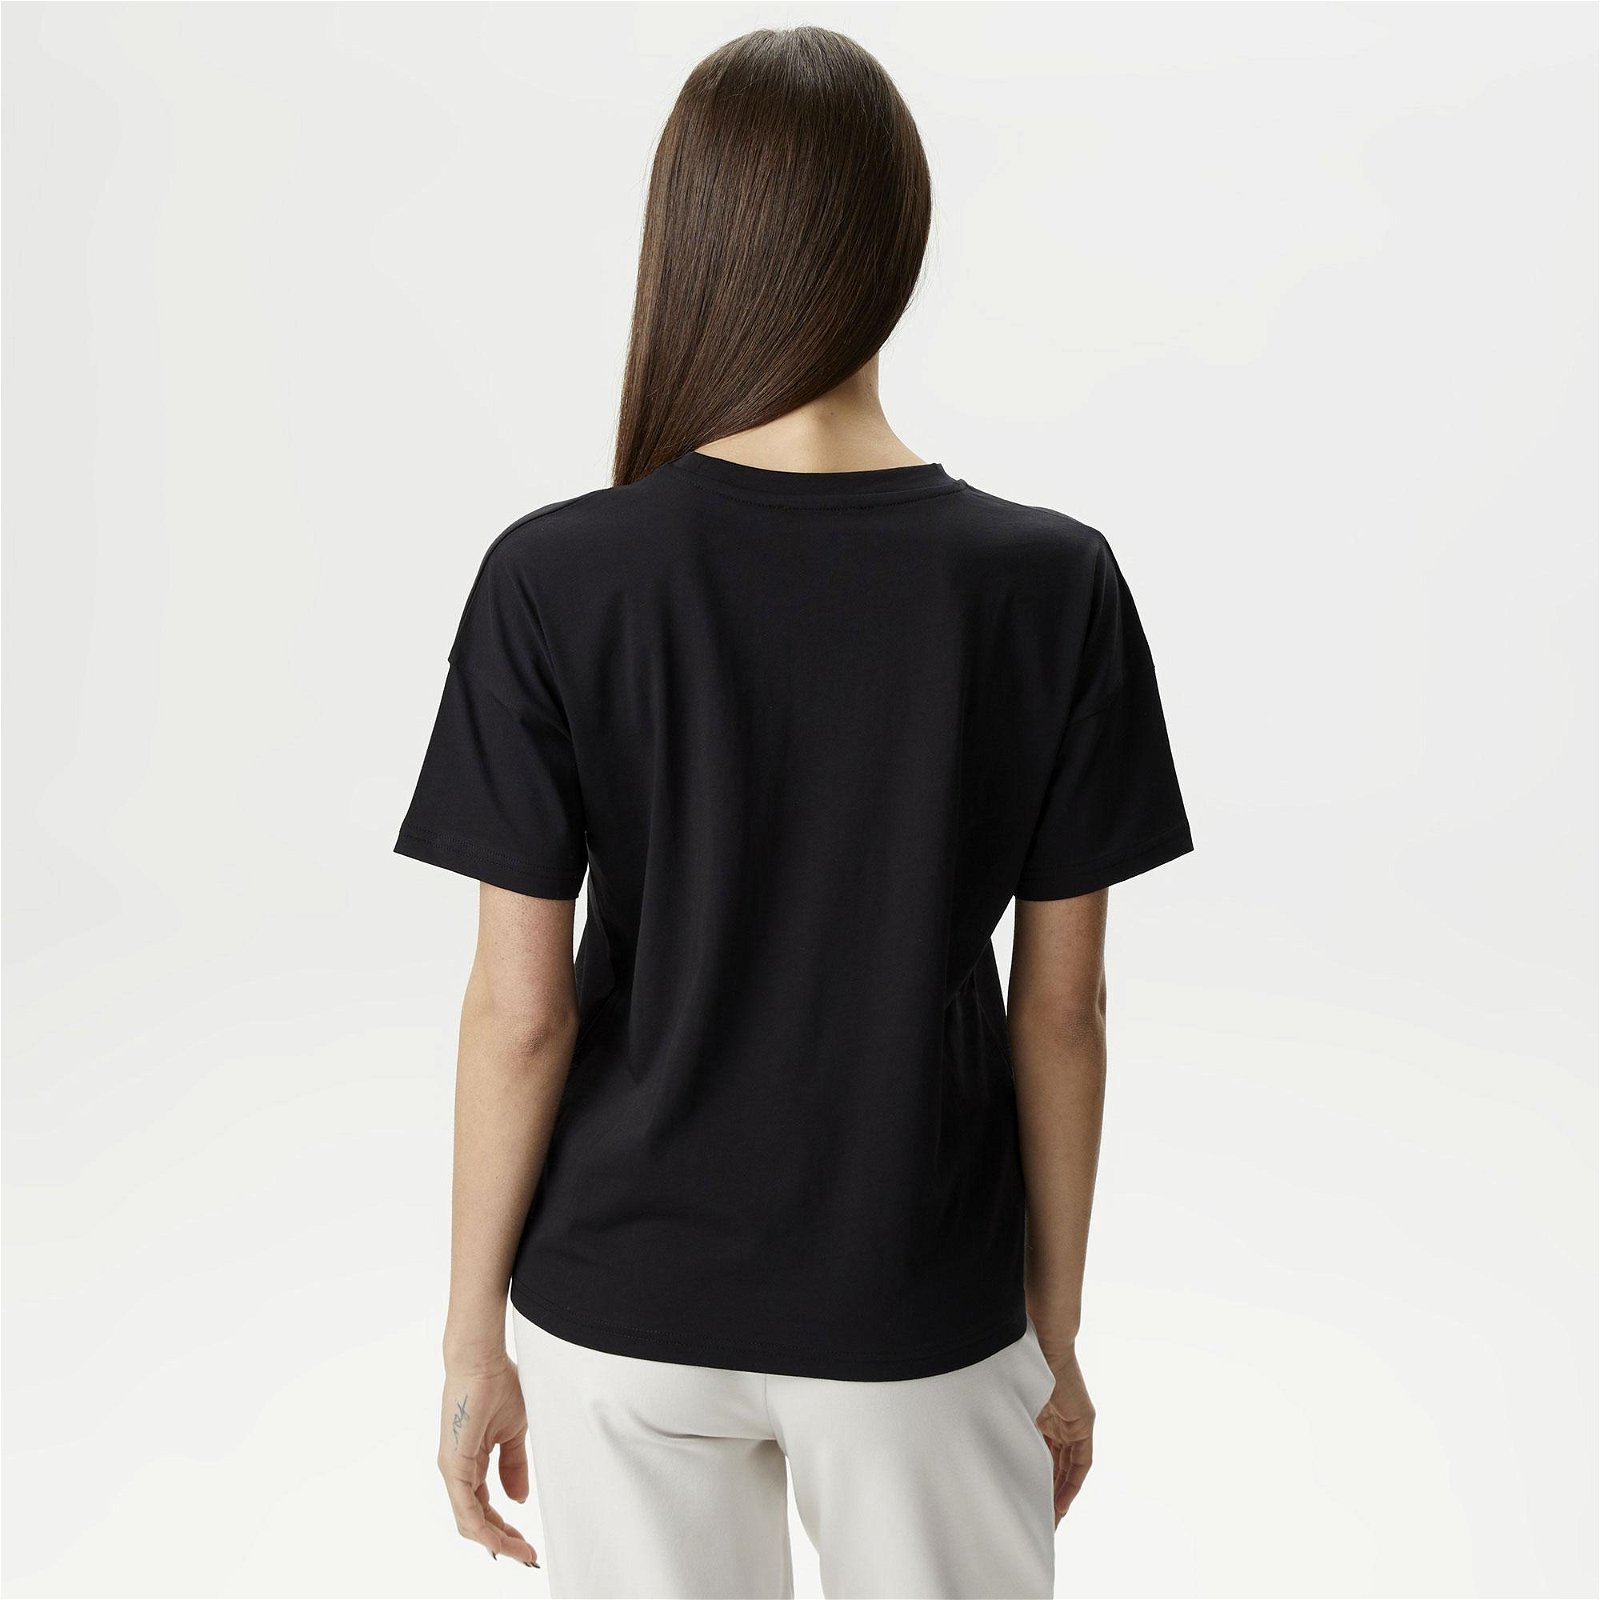 Ucla Avalon Kadın Siyah T-Shirt